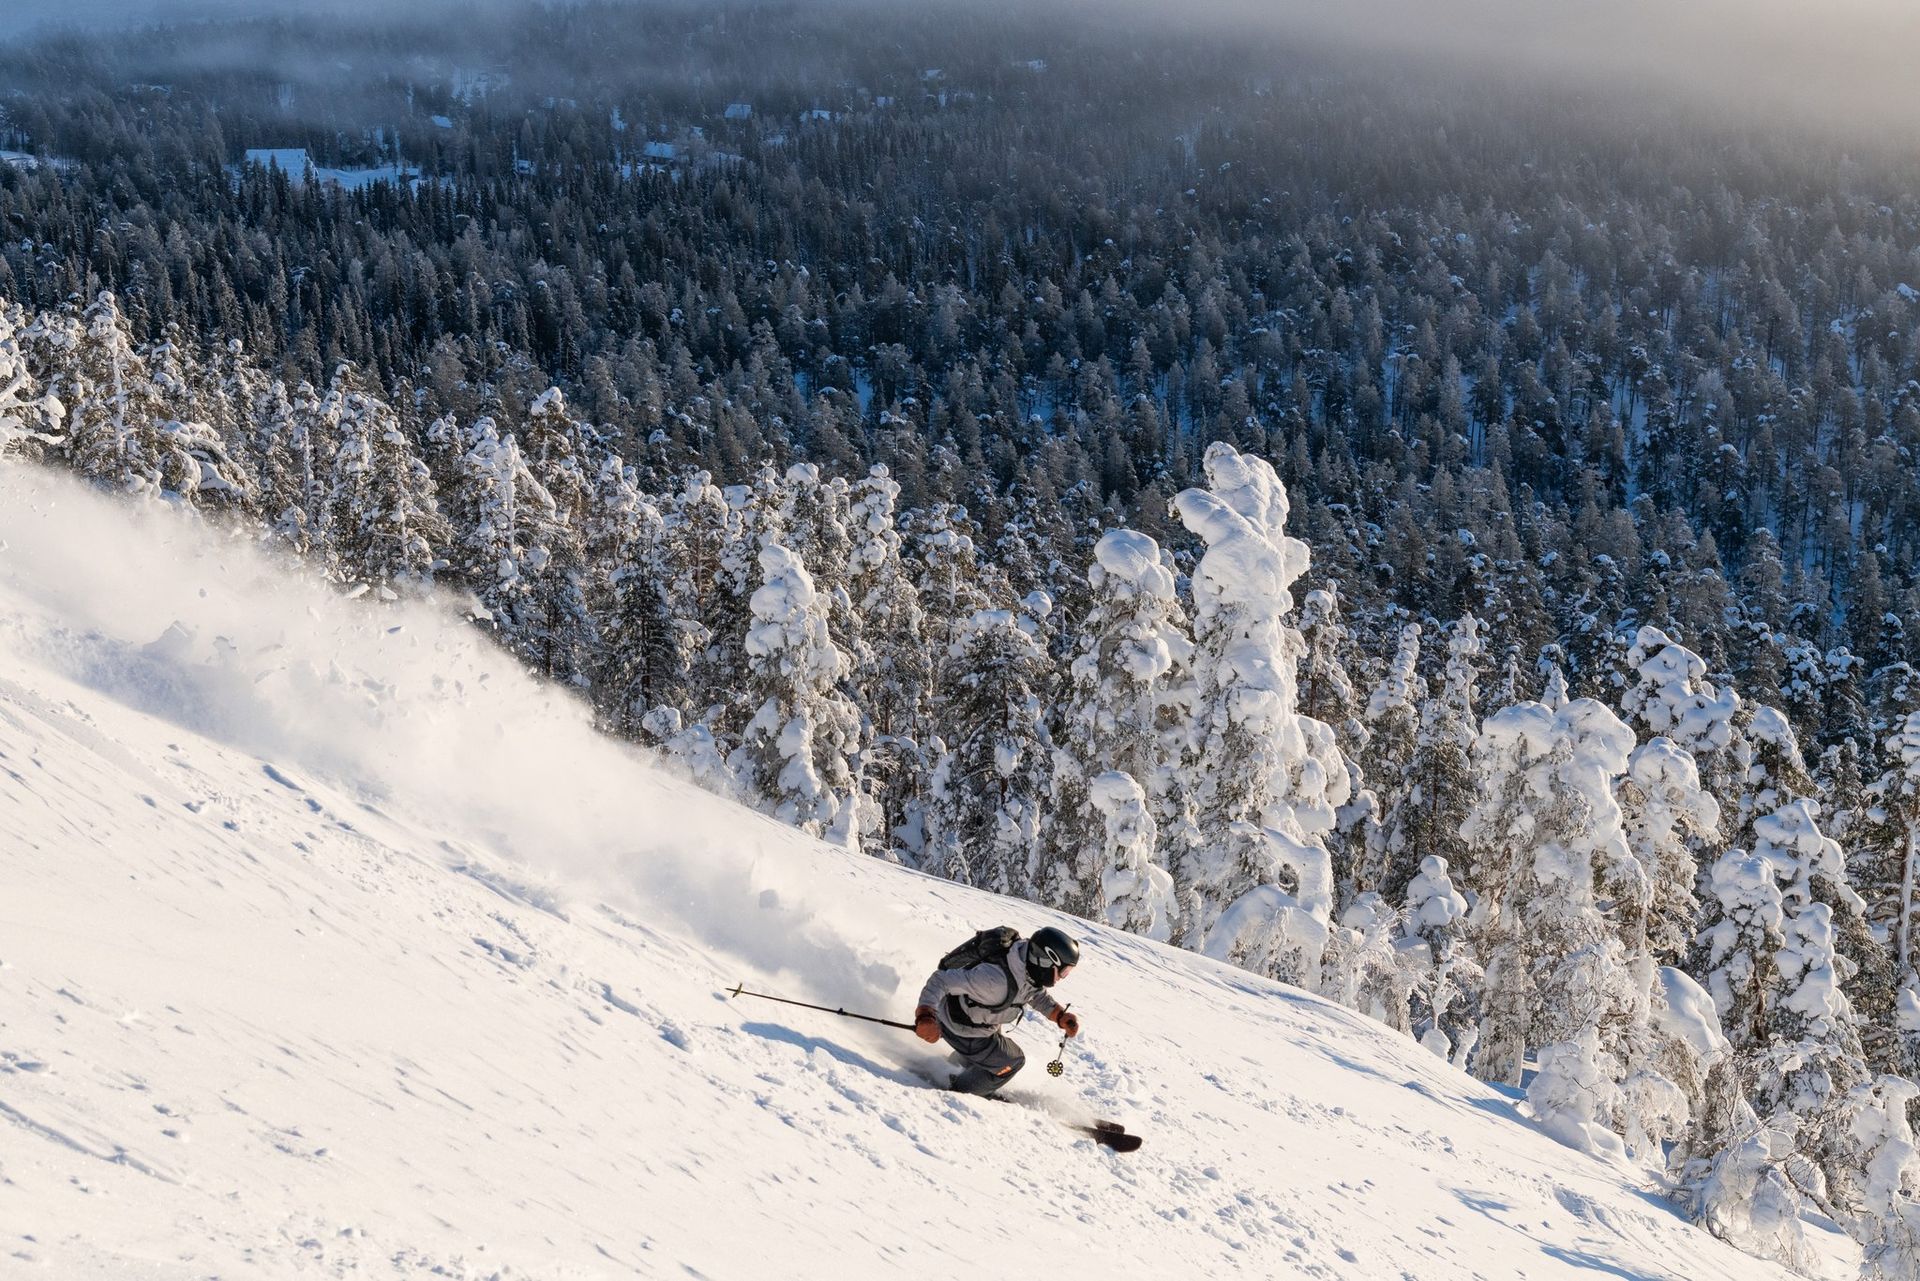 iemand is aan het skiën op een met sneeuw bedekte helling met bomen op de achtergrond.